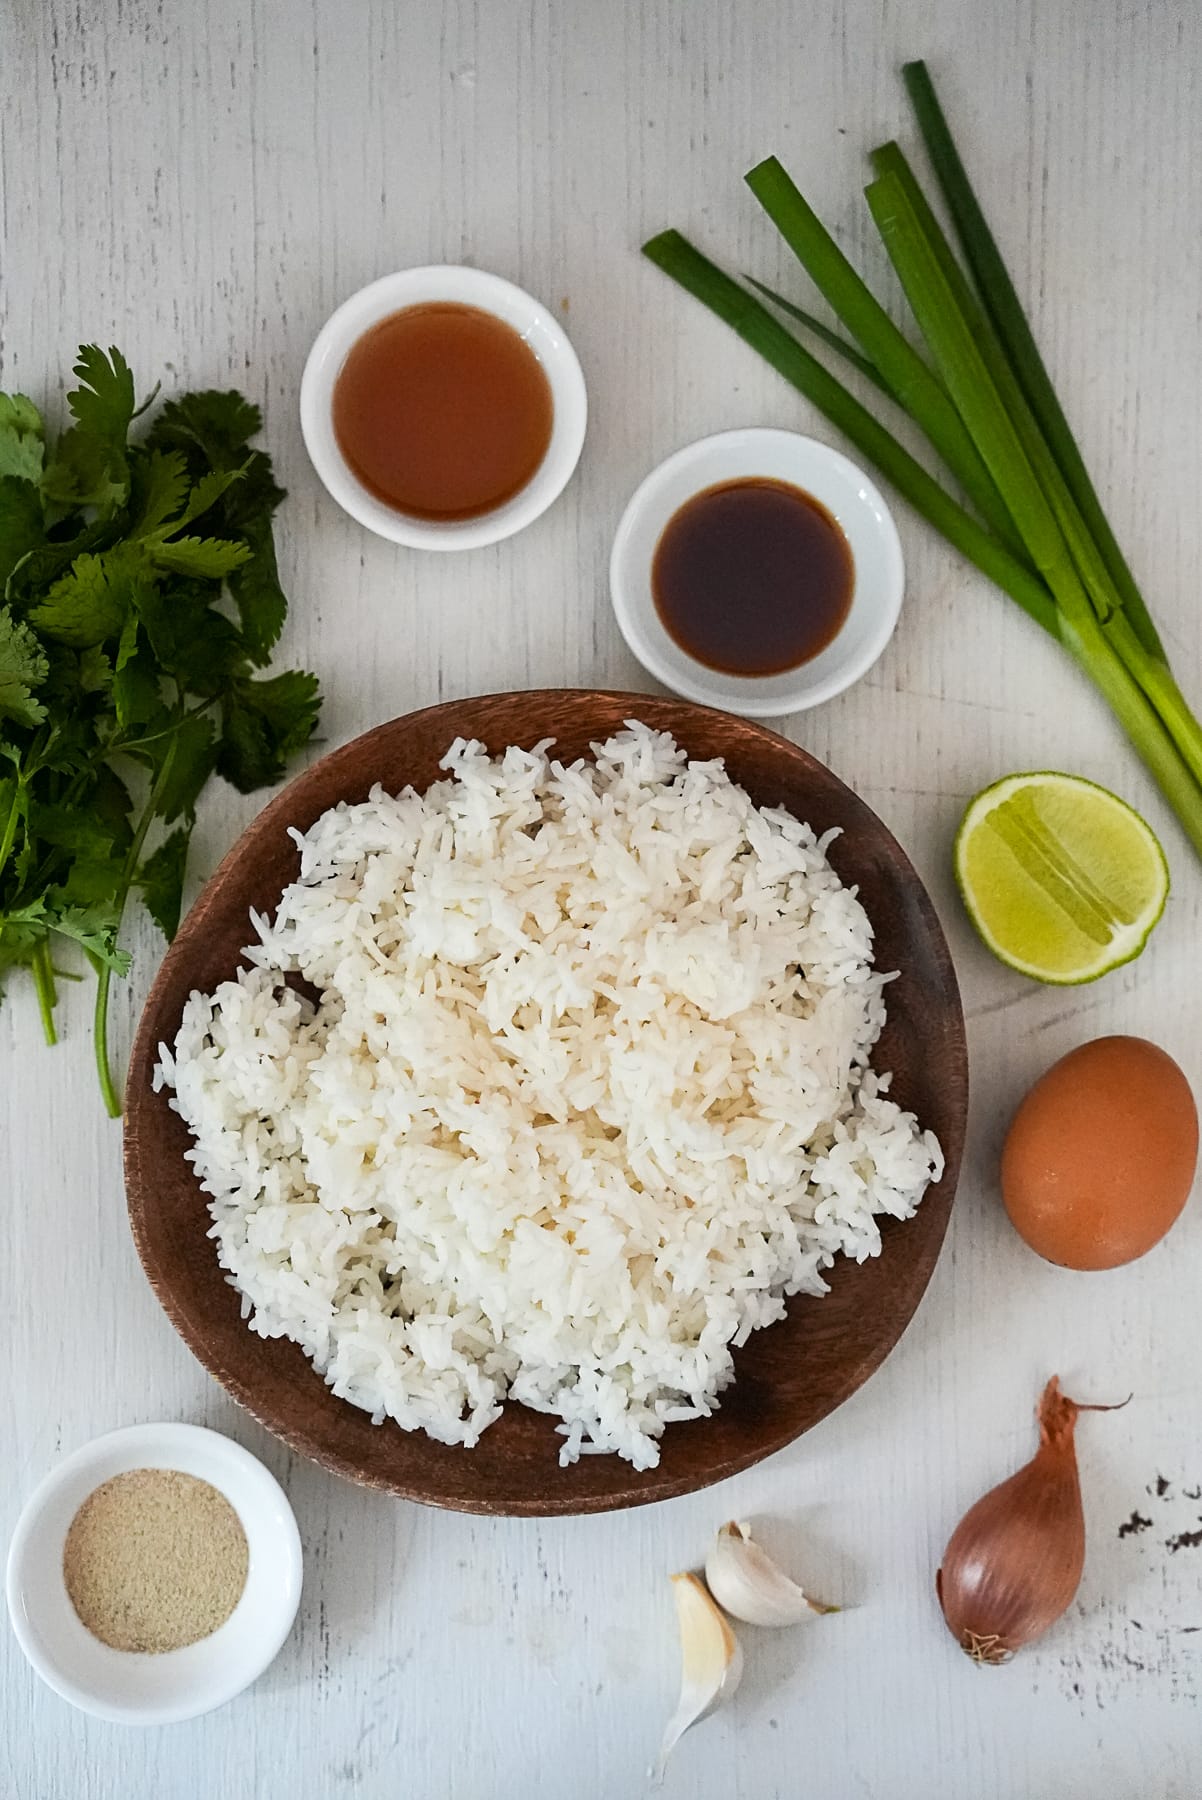 Ingredients to make Thai Fried Rice